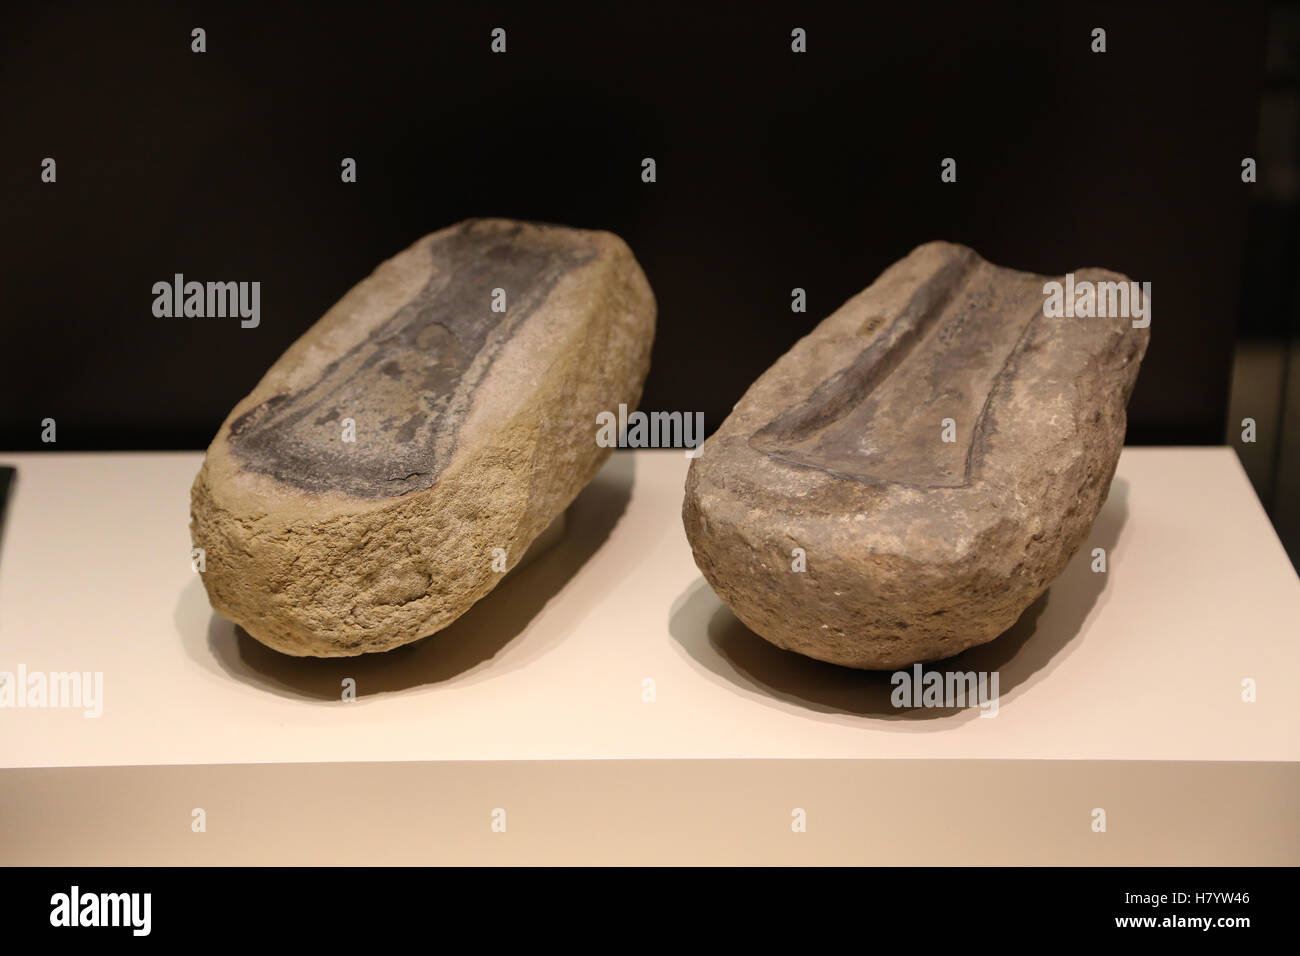 Halbe Schimmel. Bronzezeit. Spanien. Nationales Archäologisches Museum, Madrid. Spanien. Stockfoto